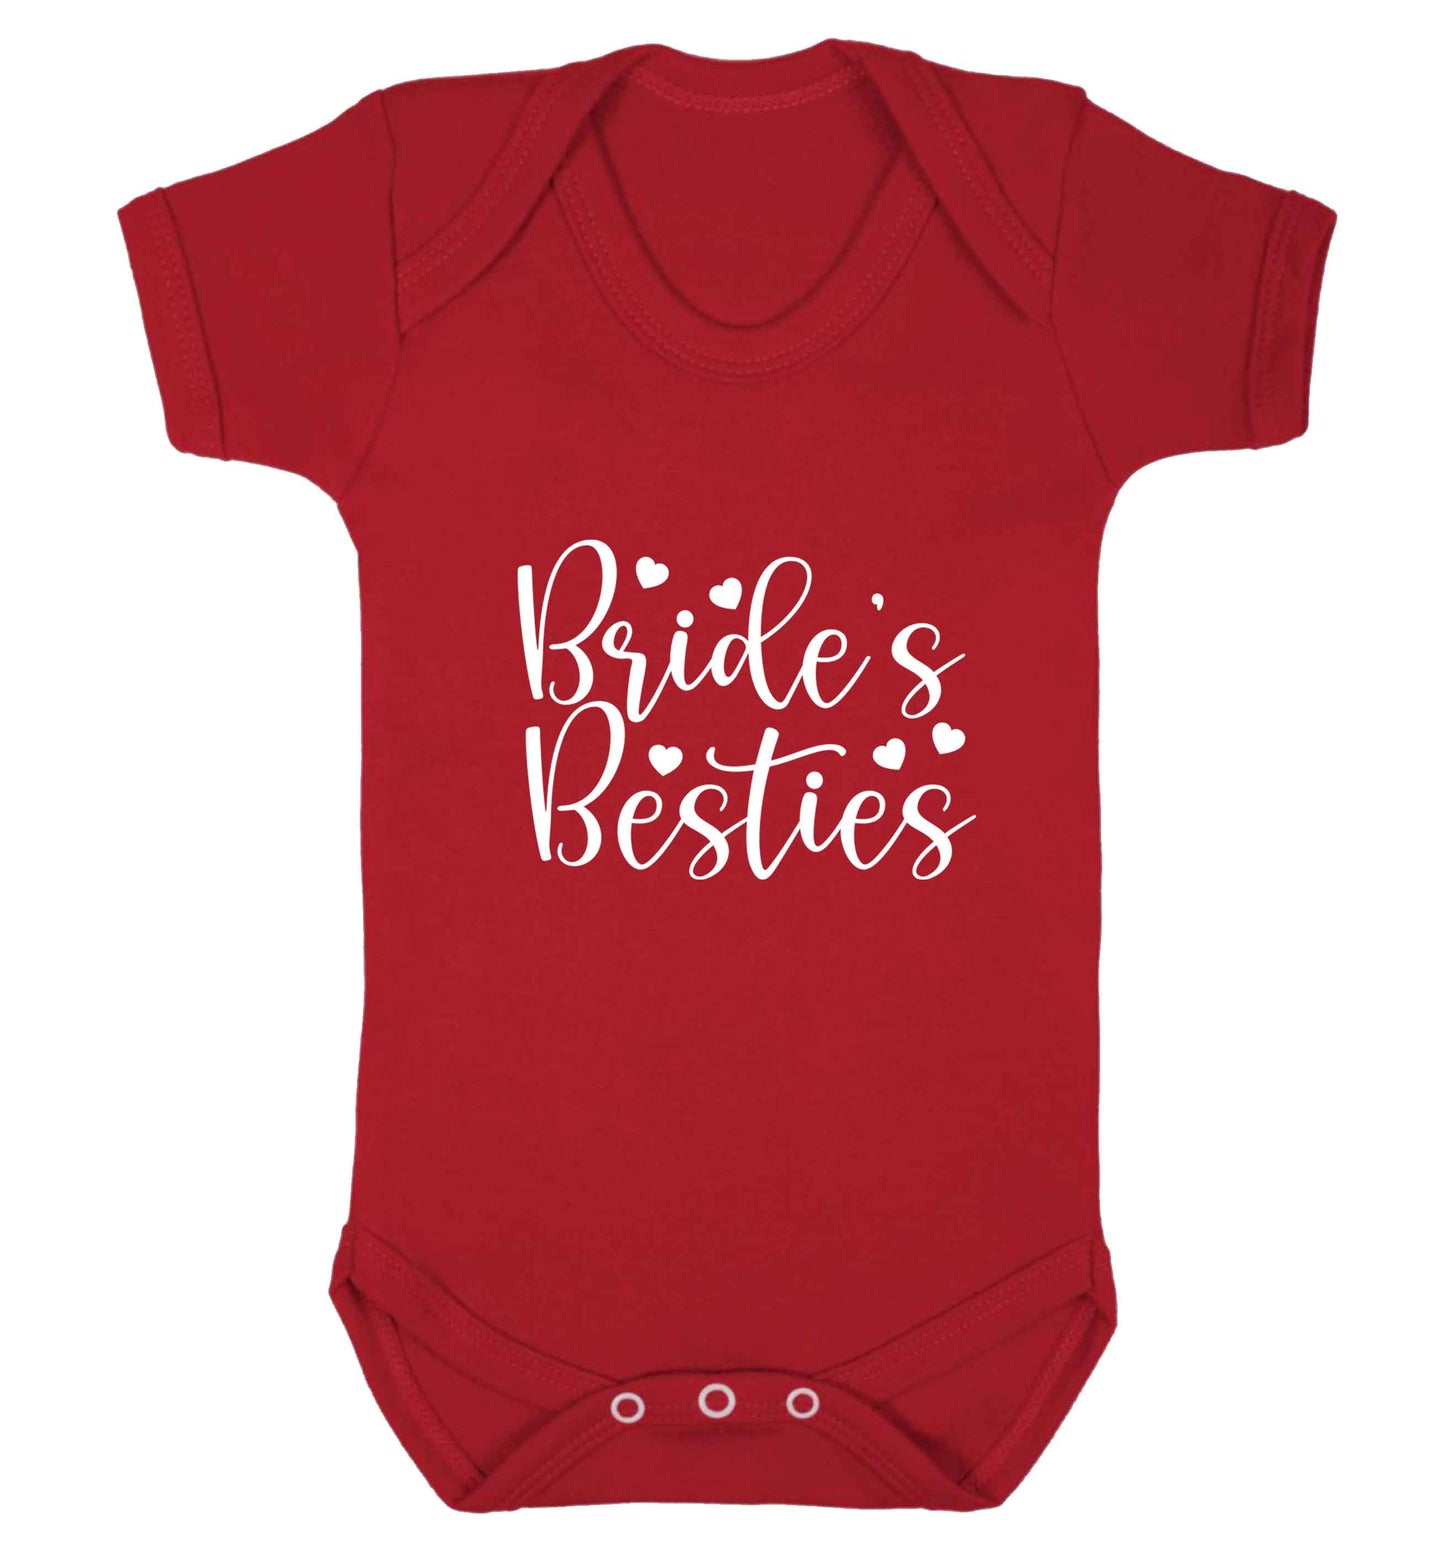 Brides besties baby vest red 18-24 months